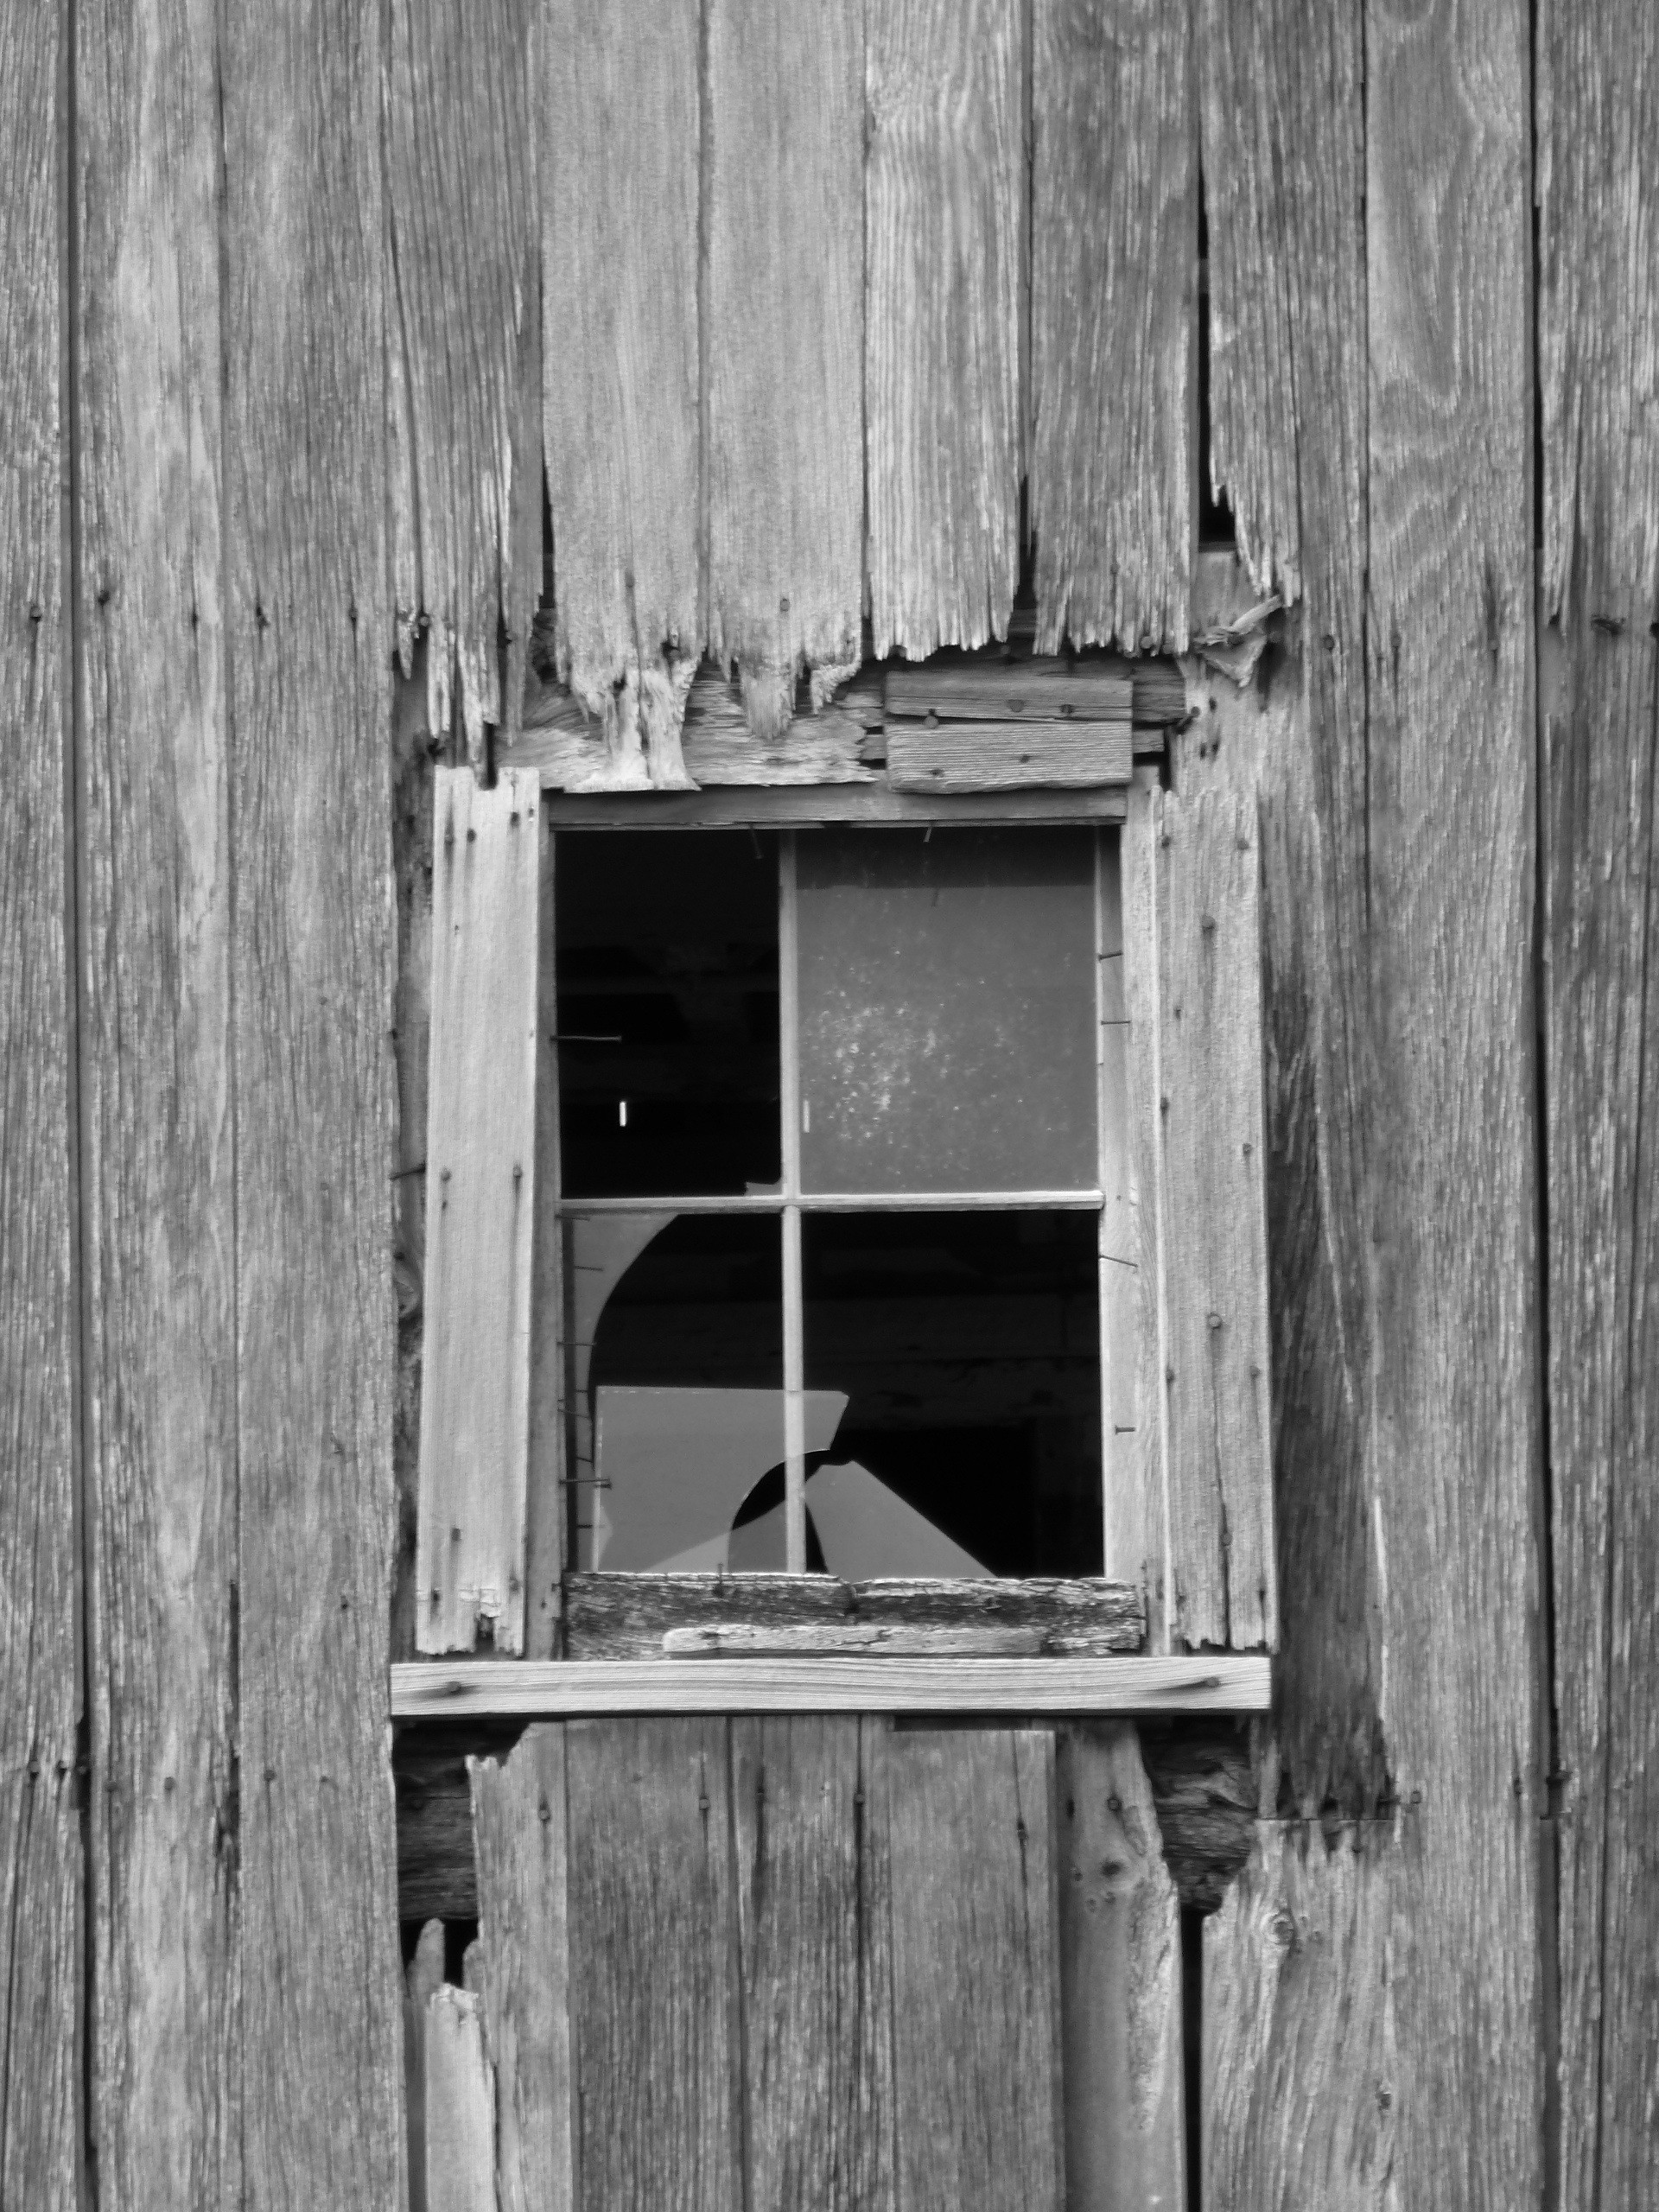 Broken window photo